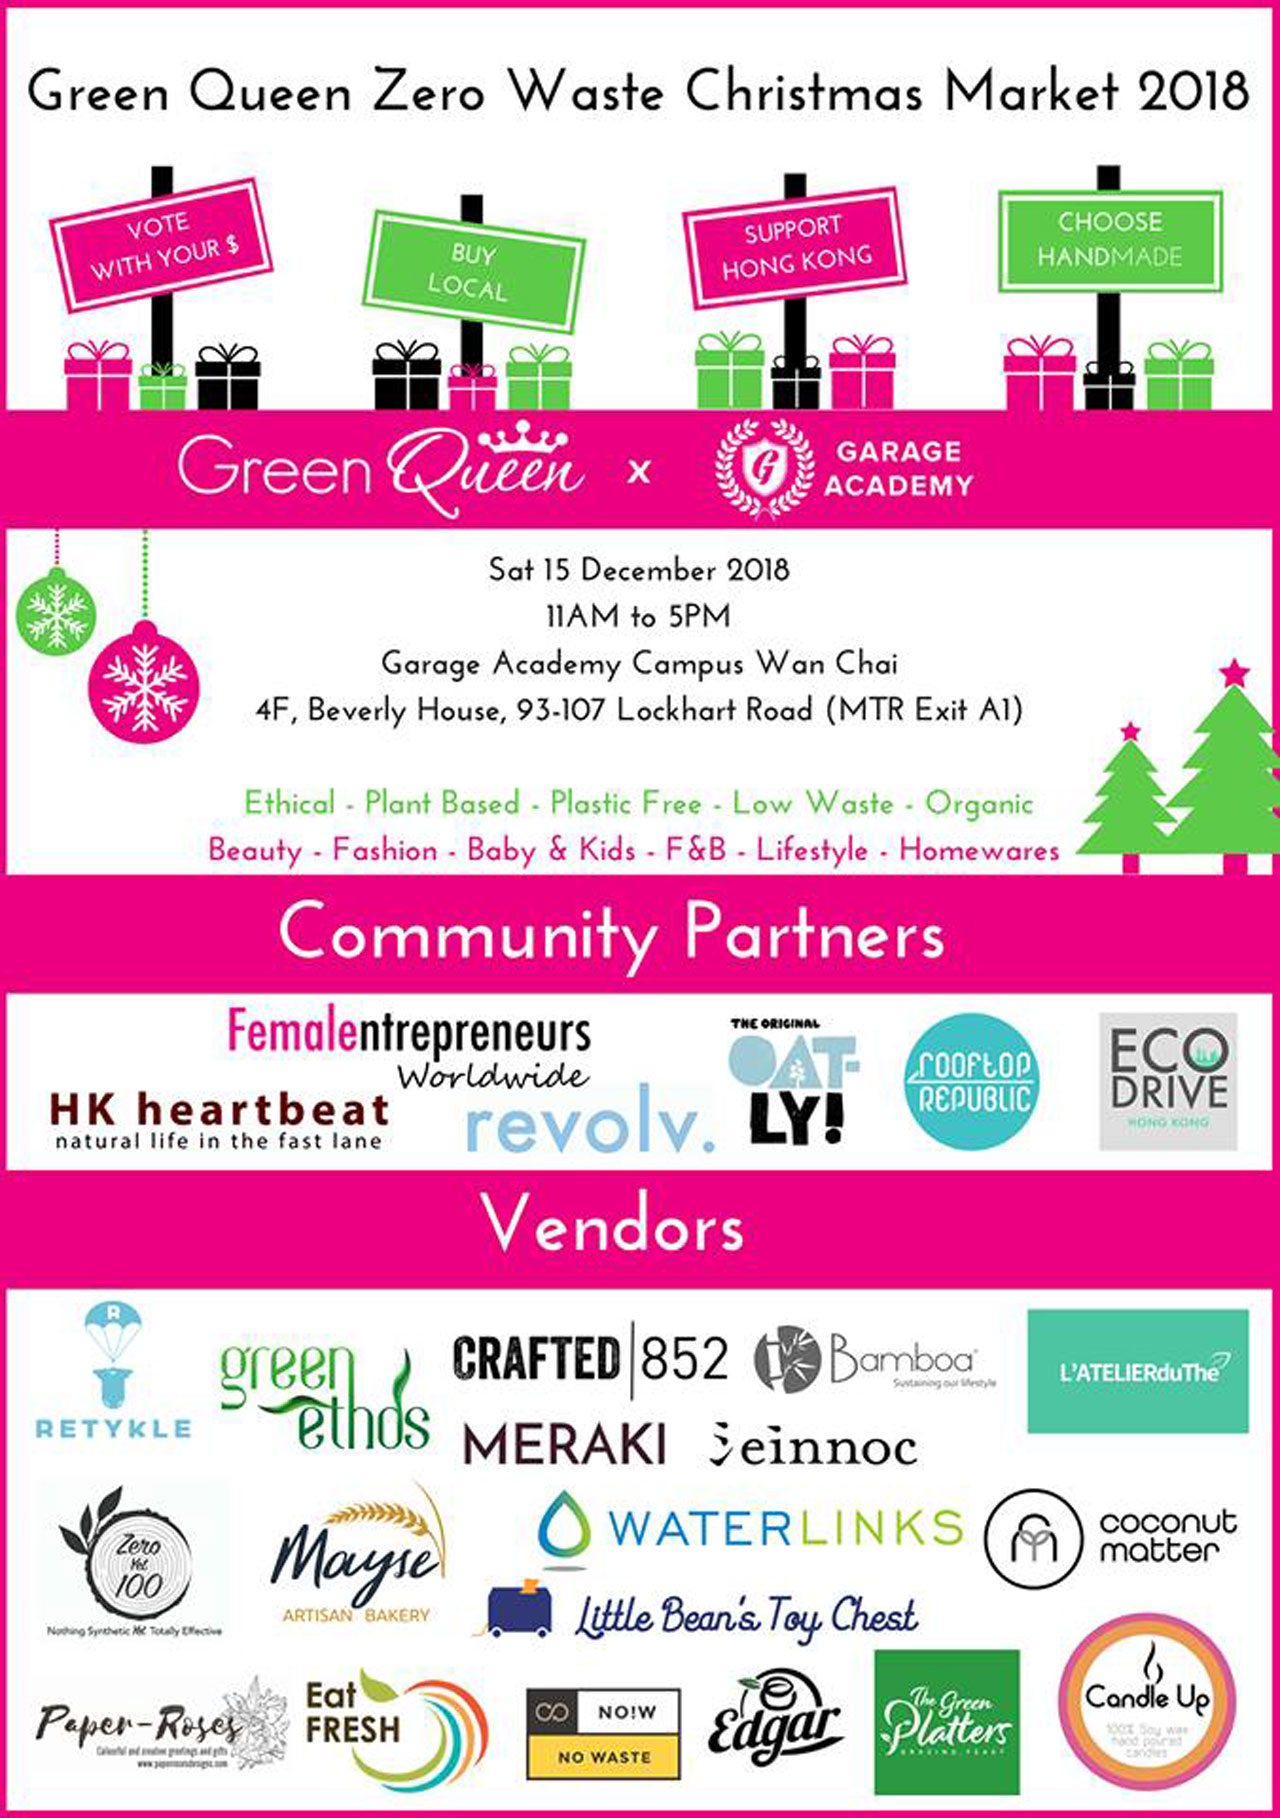 Green Queen Zero Waste Christmas Market